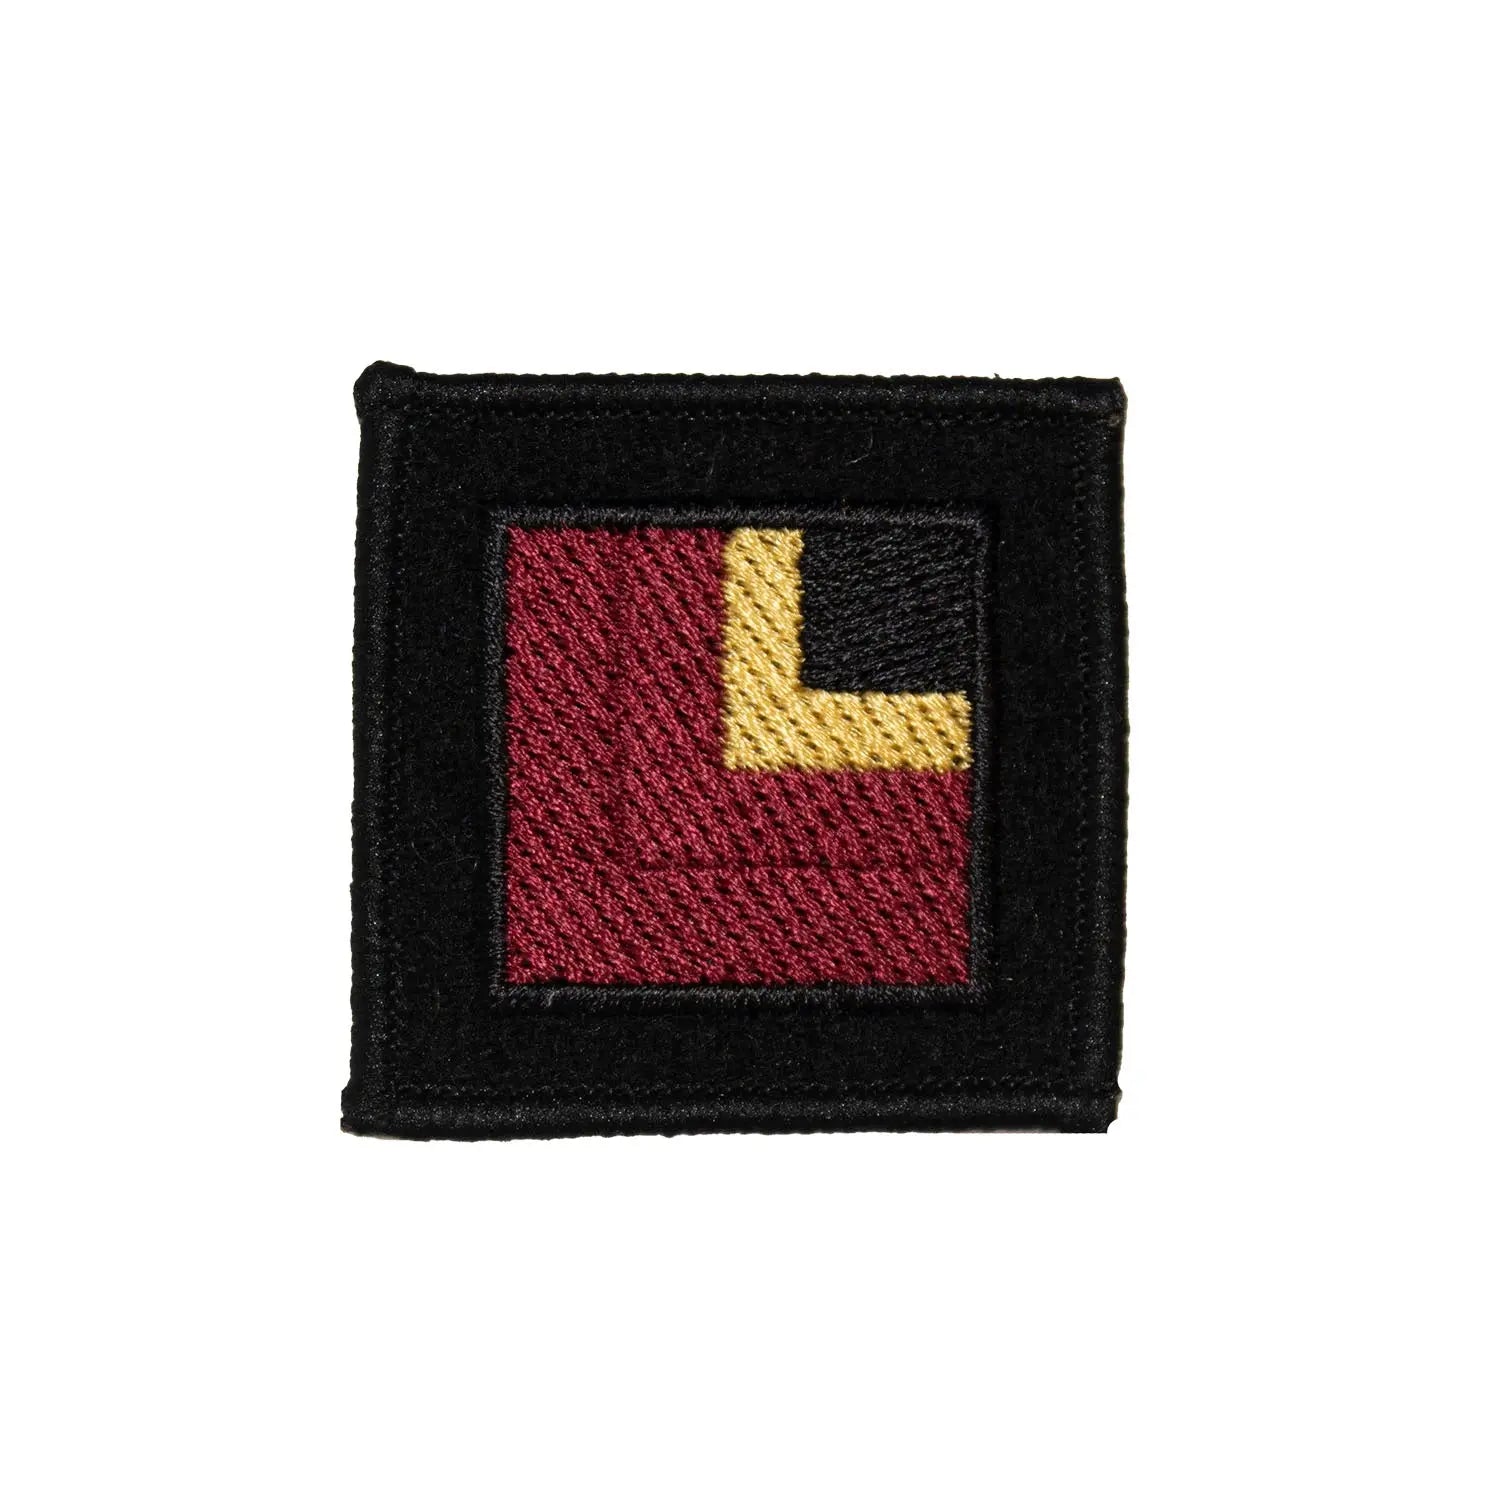 Royal Dragoon Guards Regimental Flash British Army Badge wyedean